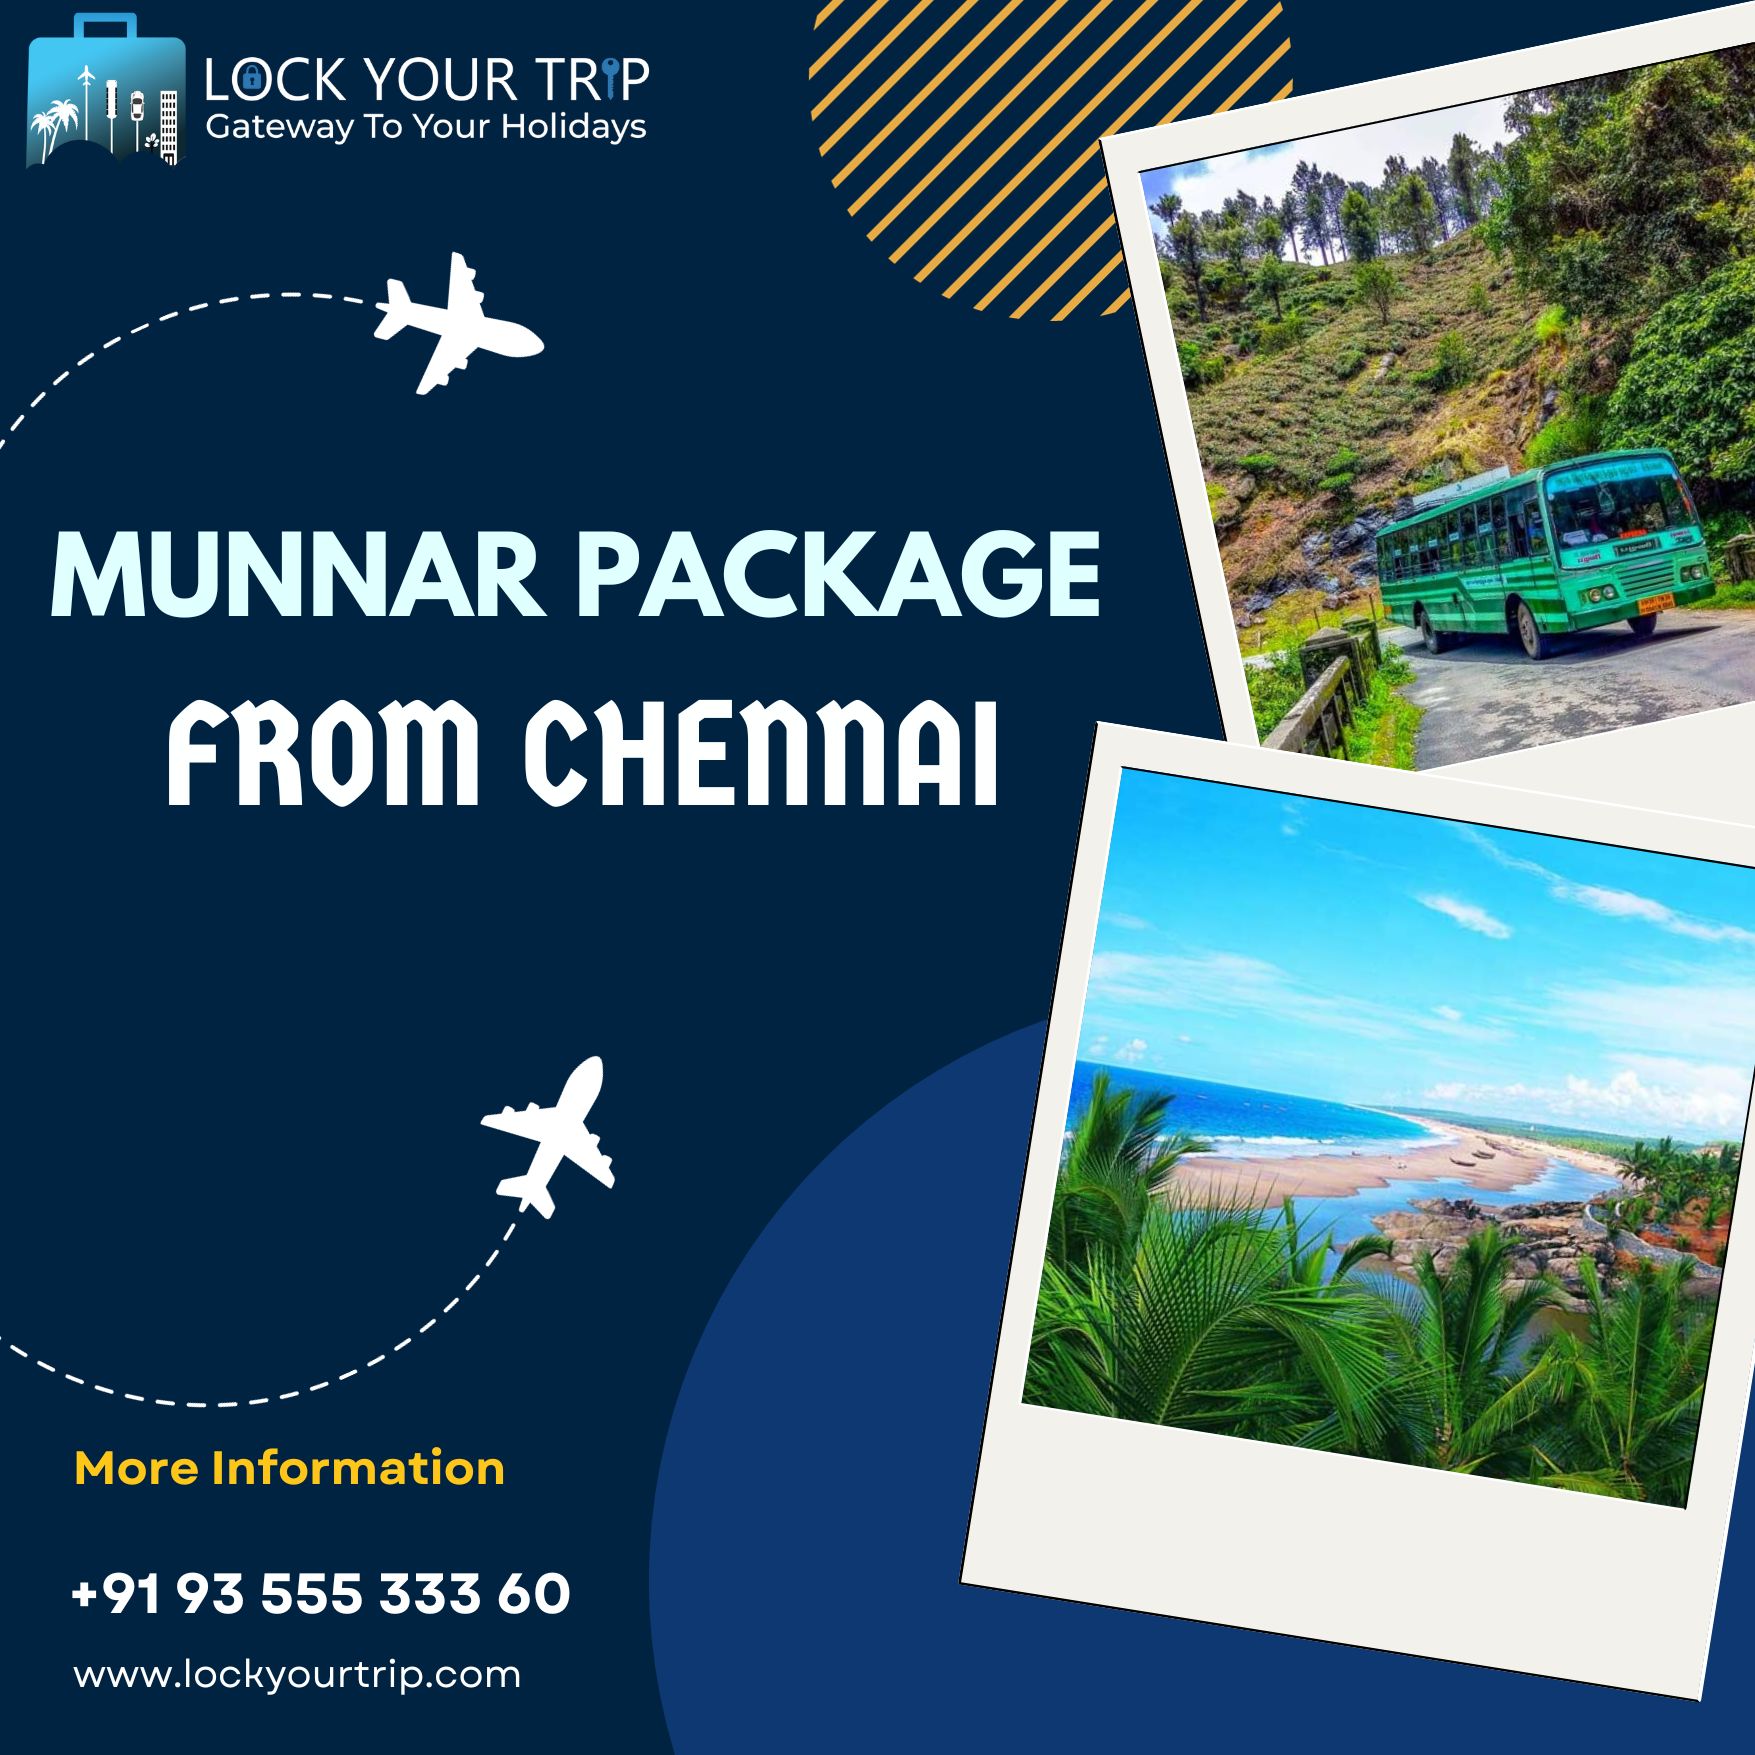 Munnar package from Chennai